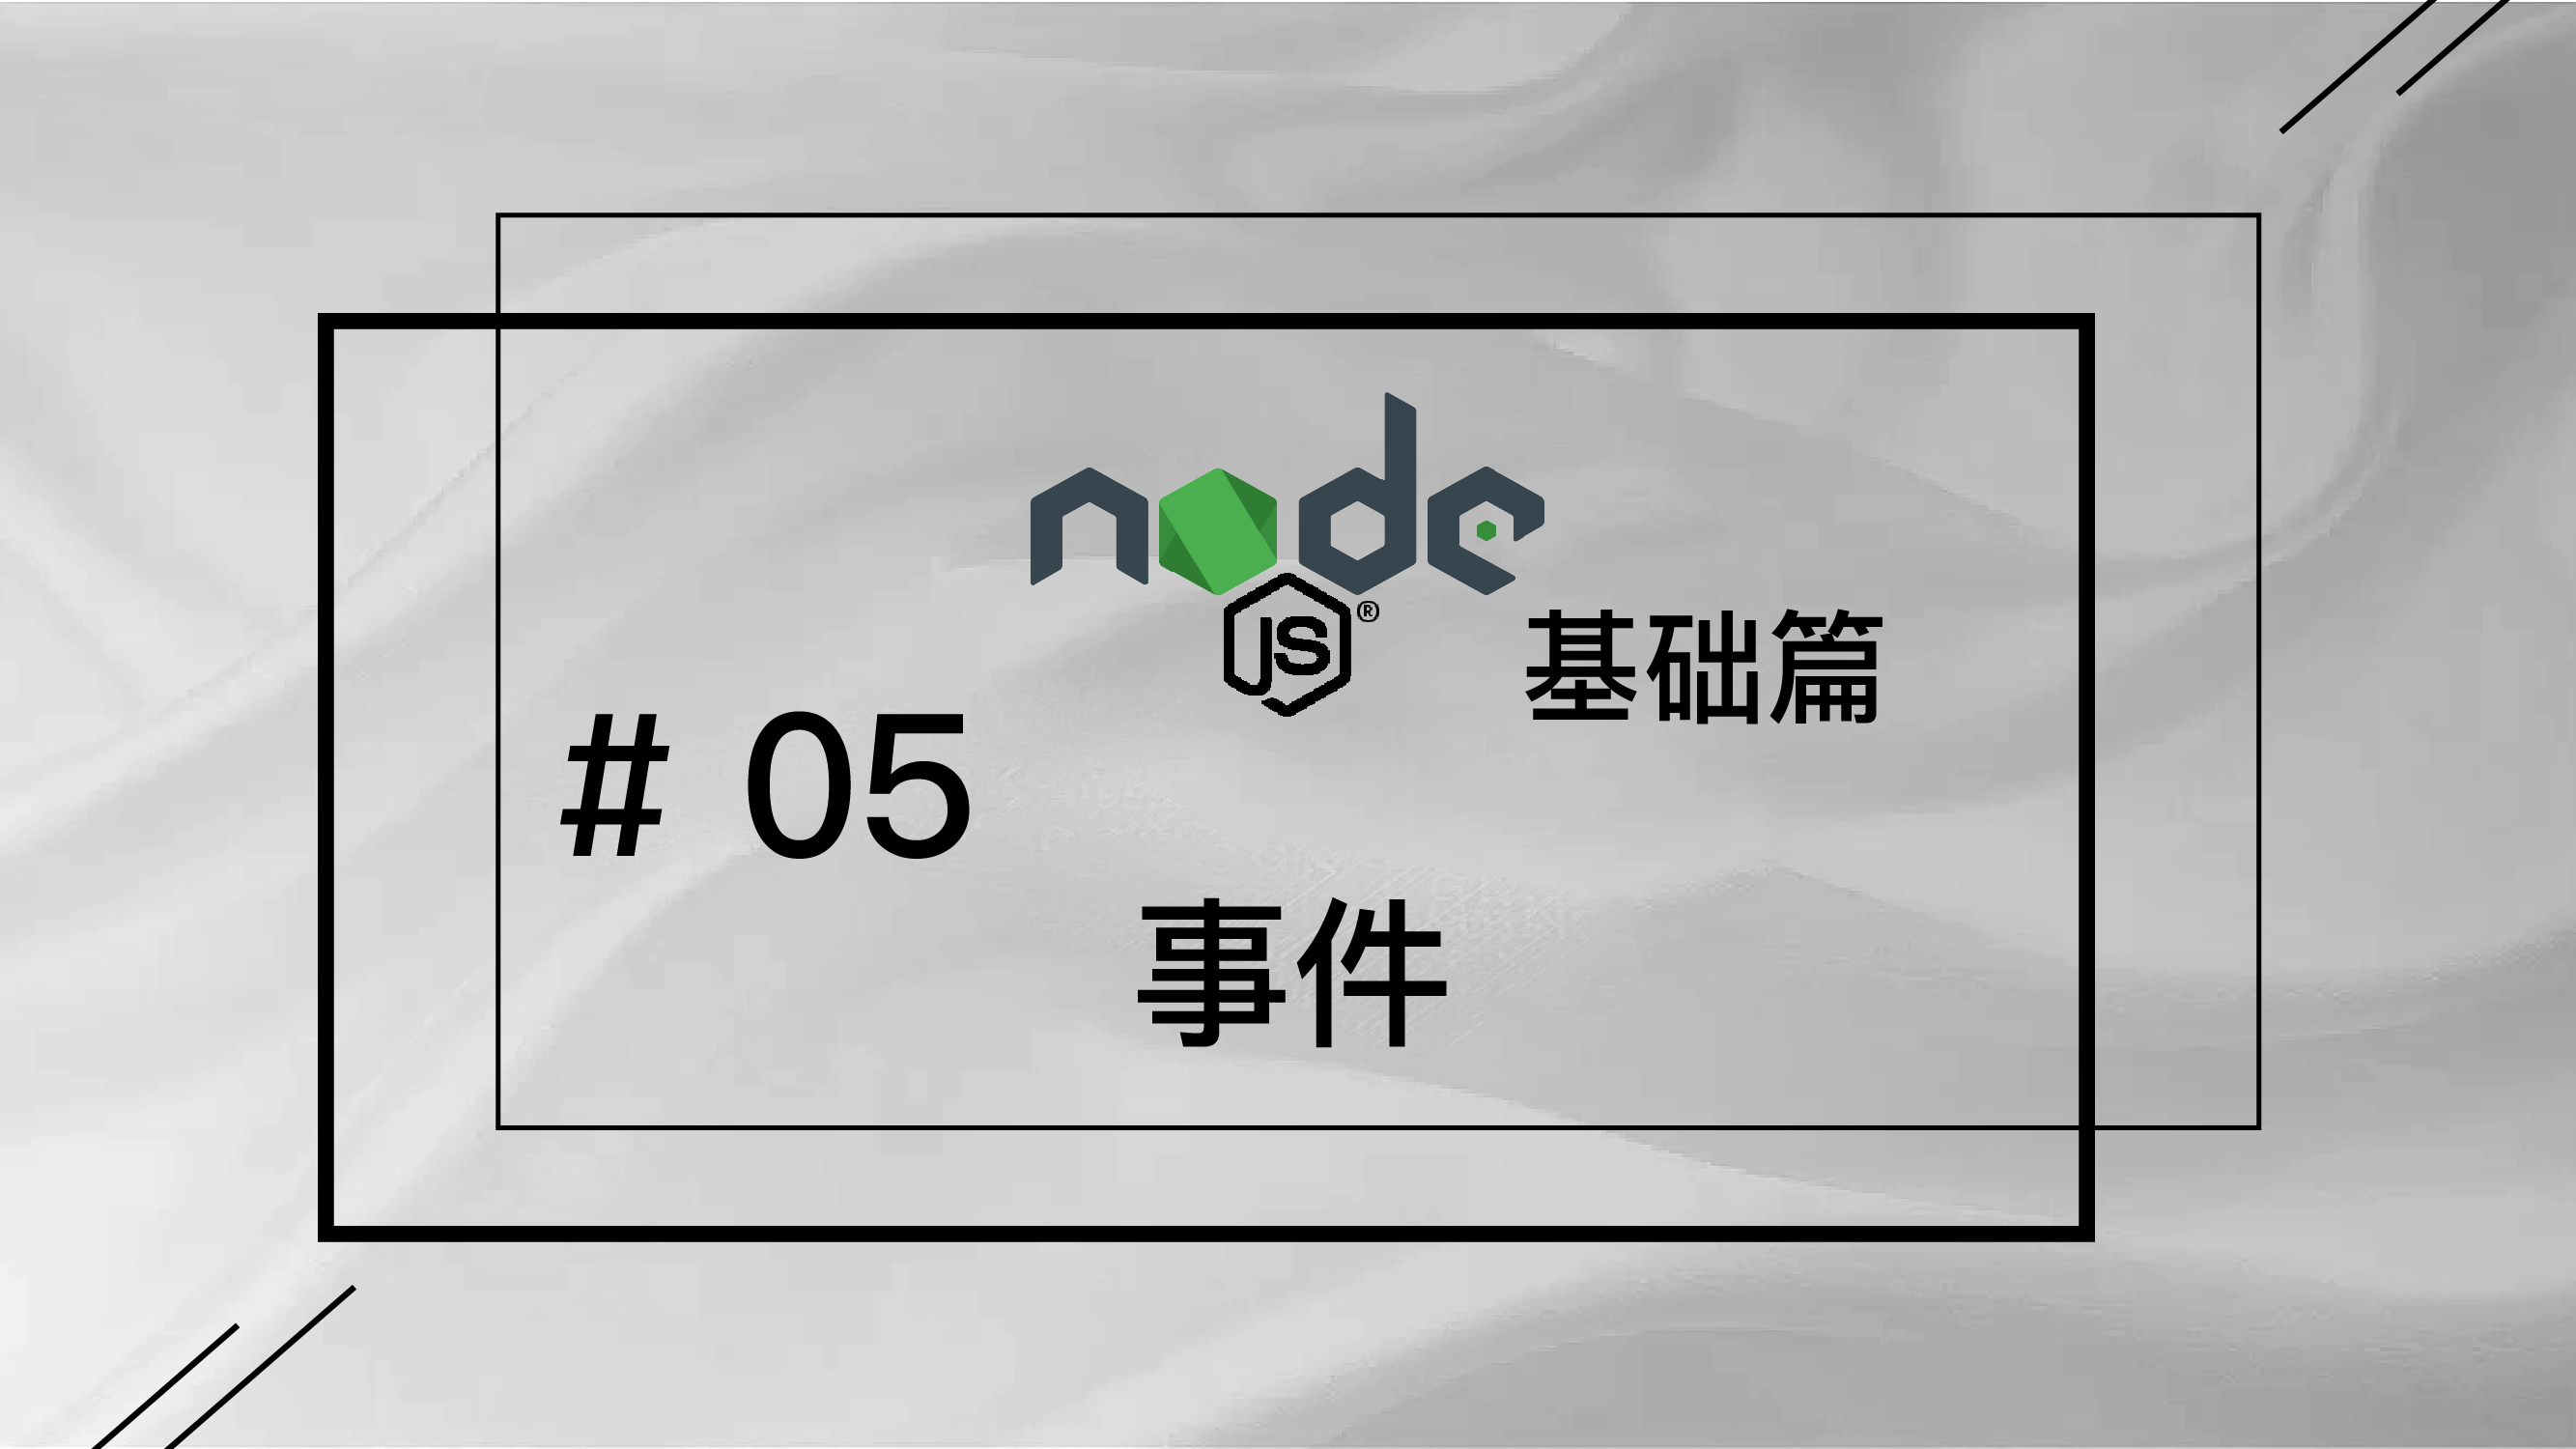 轻松学 Node.js - 基础篇免费视频教程 #5 事件